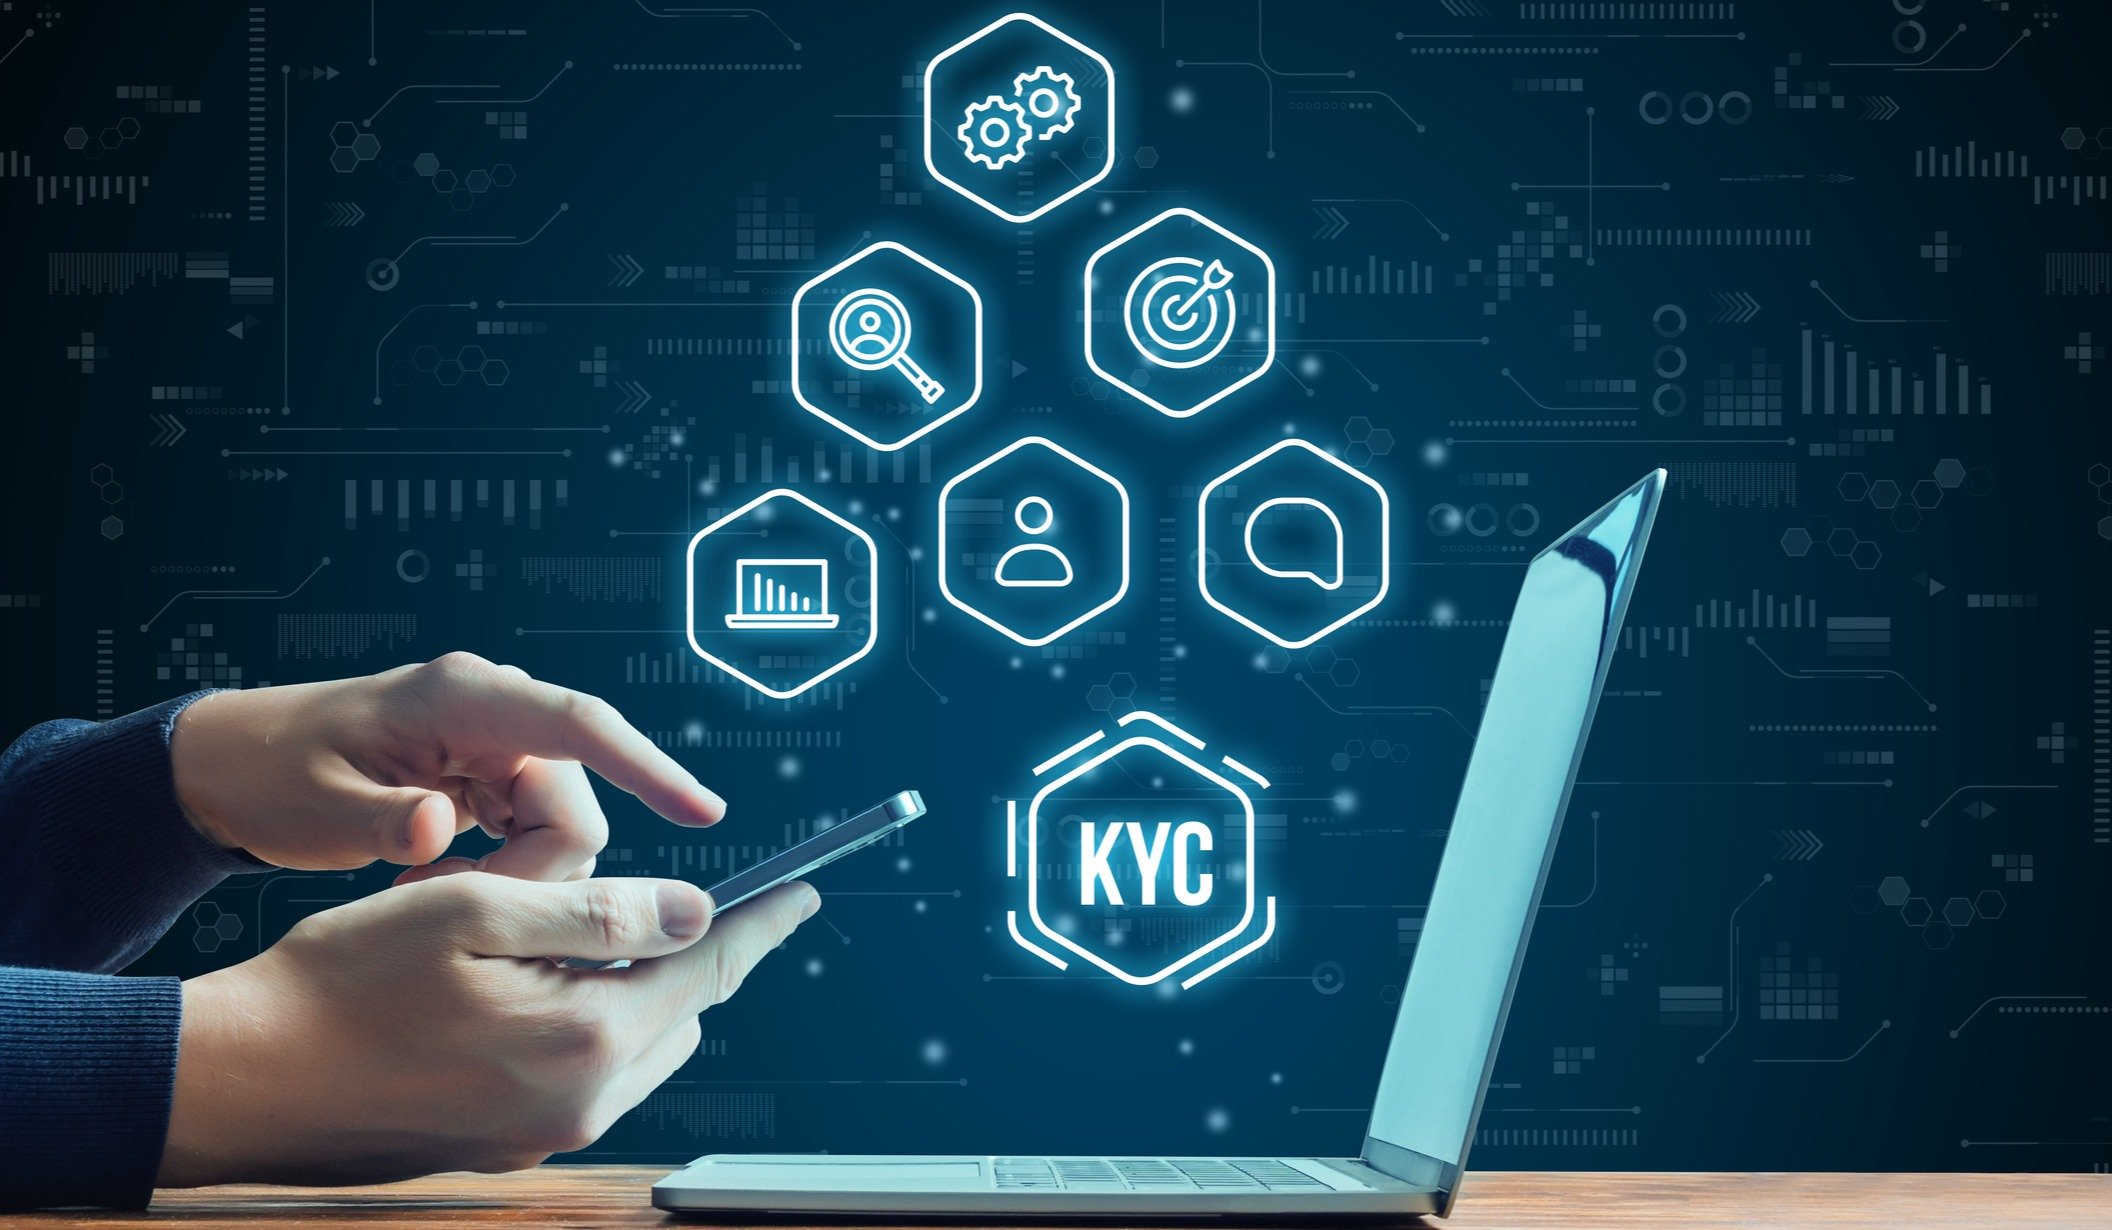 Qué es KYC (Know Your Customer), por qué es importante y cómo obtener